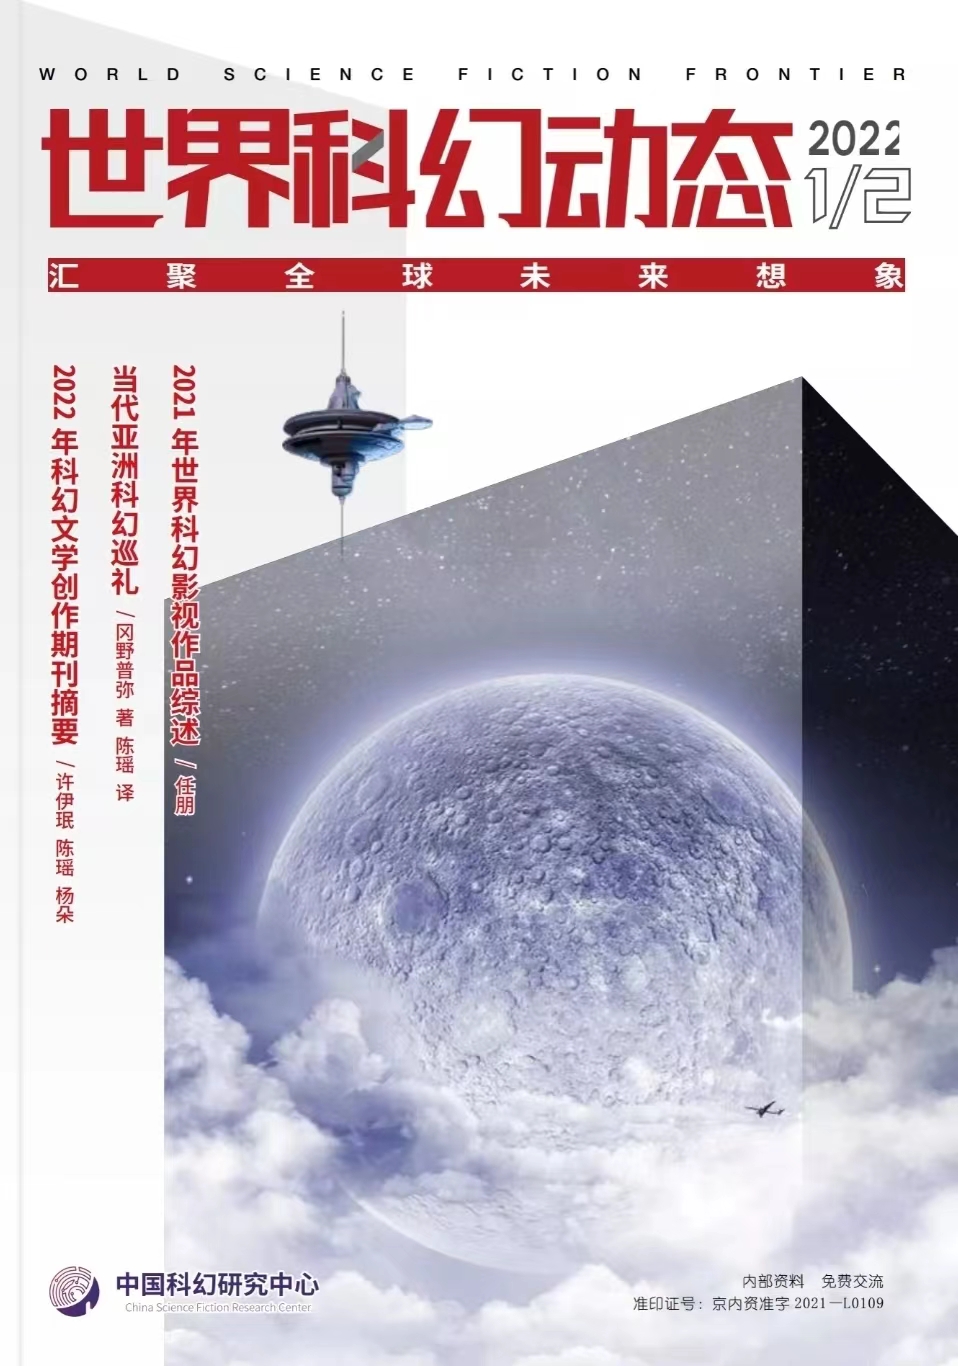 【新刊速递】世界科幻动态2022年第1-2期合刊